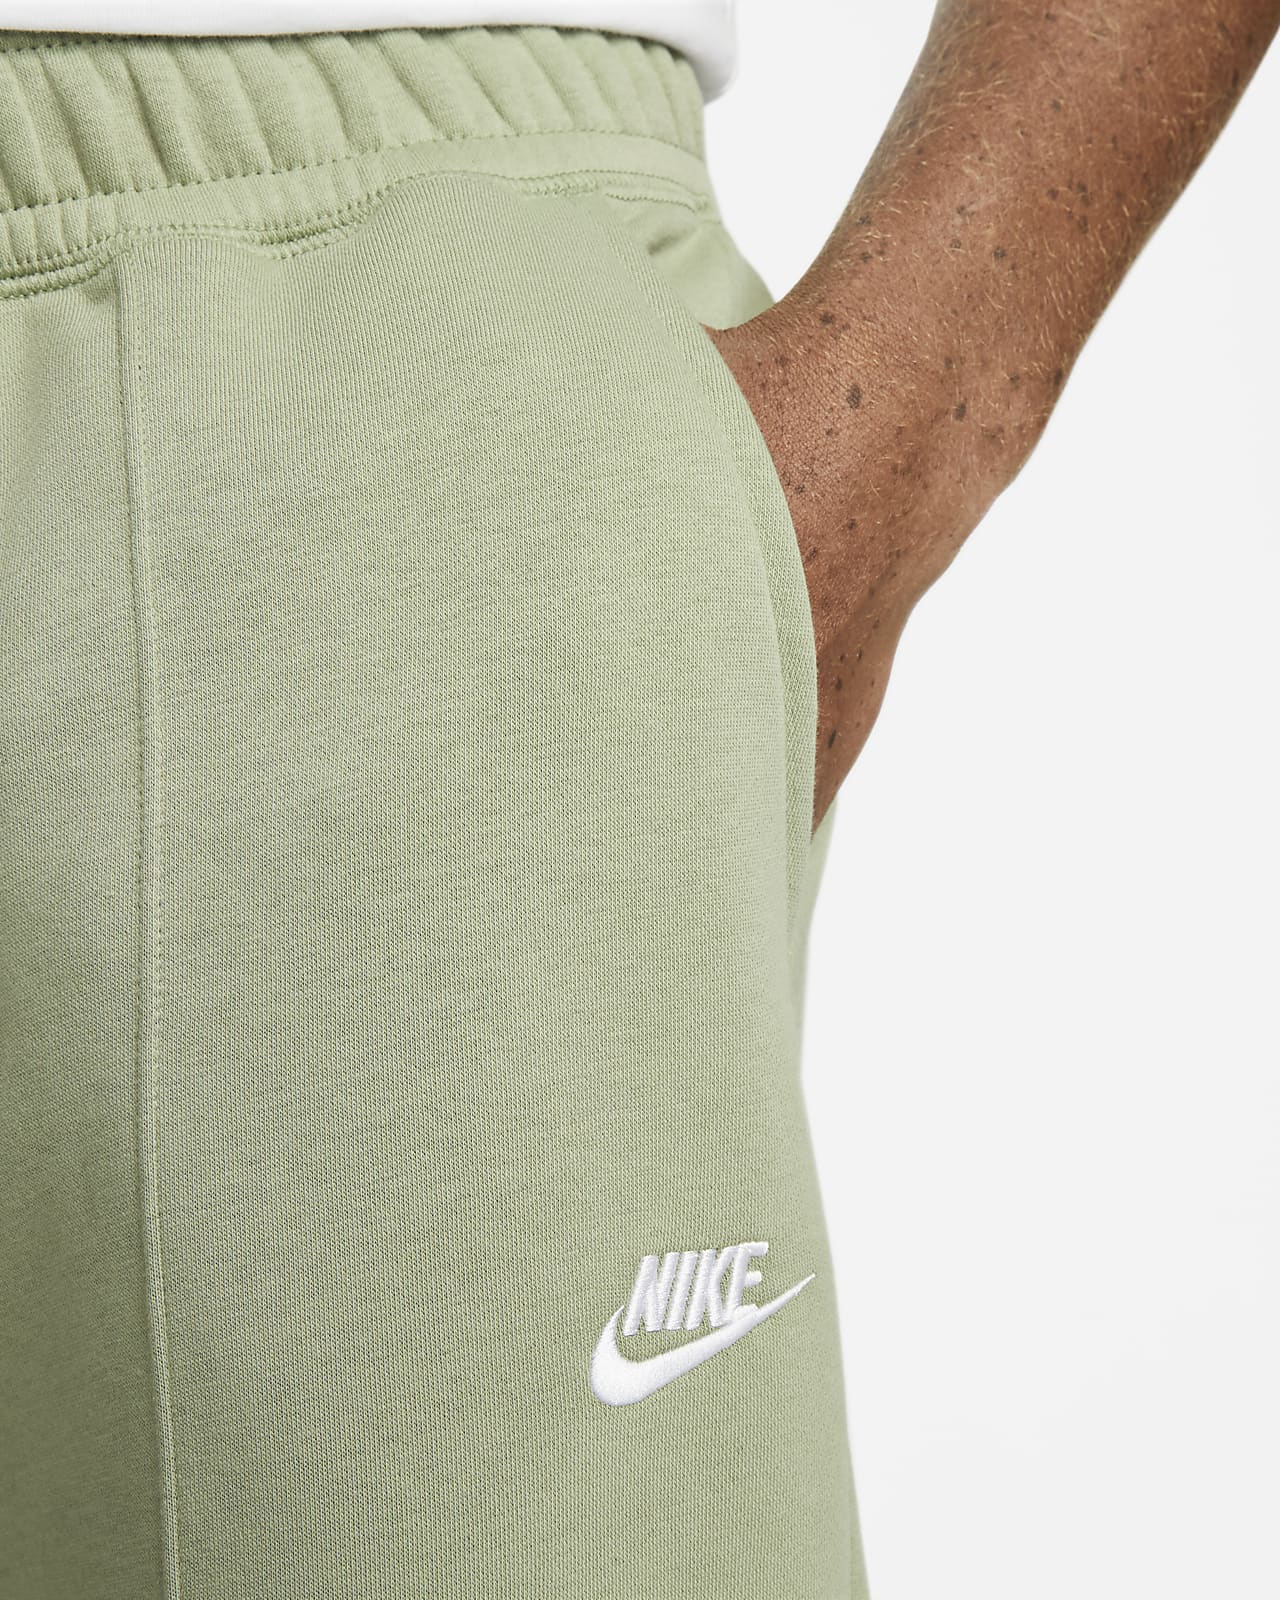 Nike Sportswear Club Fleece Men's Football Pants.